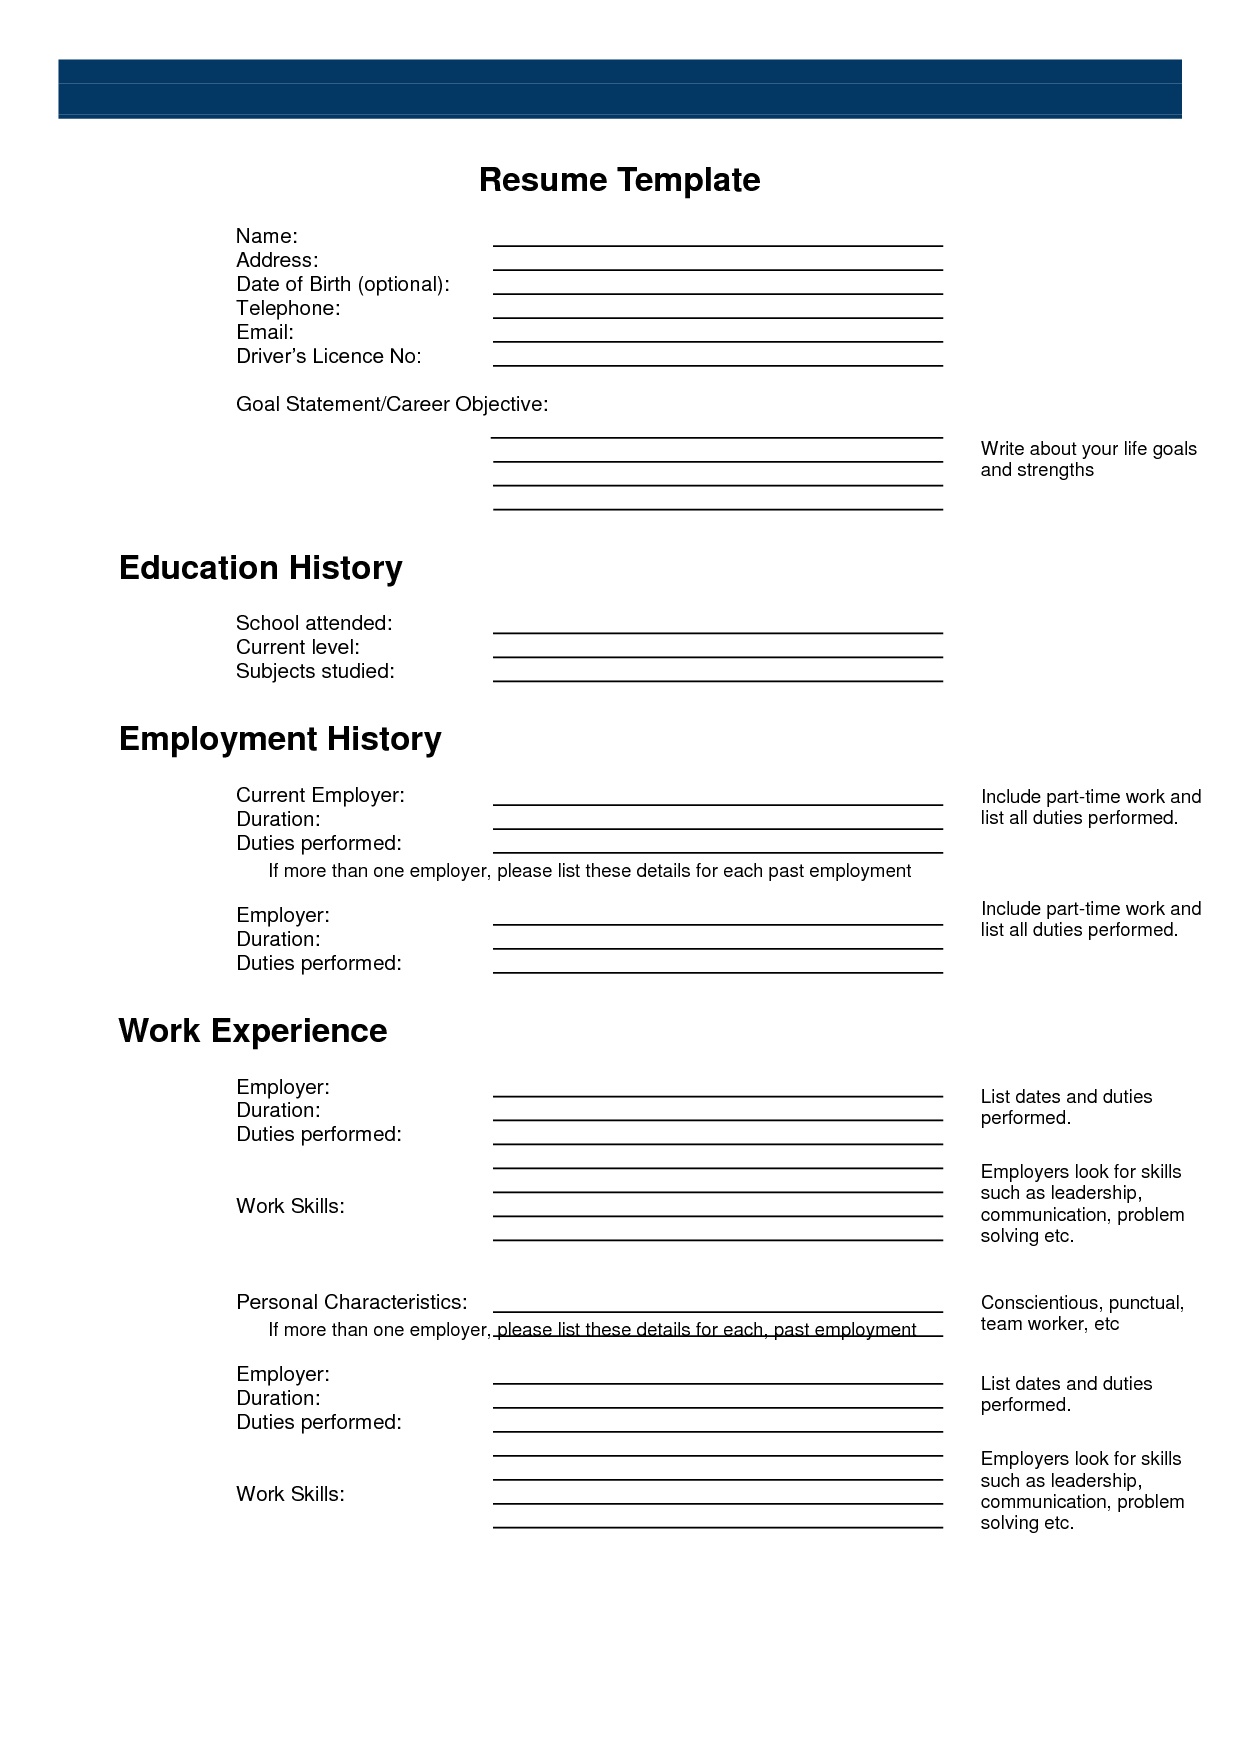 Free Printable Resume Printouts On Resumes 6 - Tjfs-Journal - Free Printable Resume